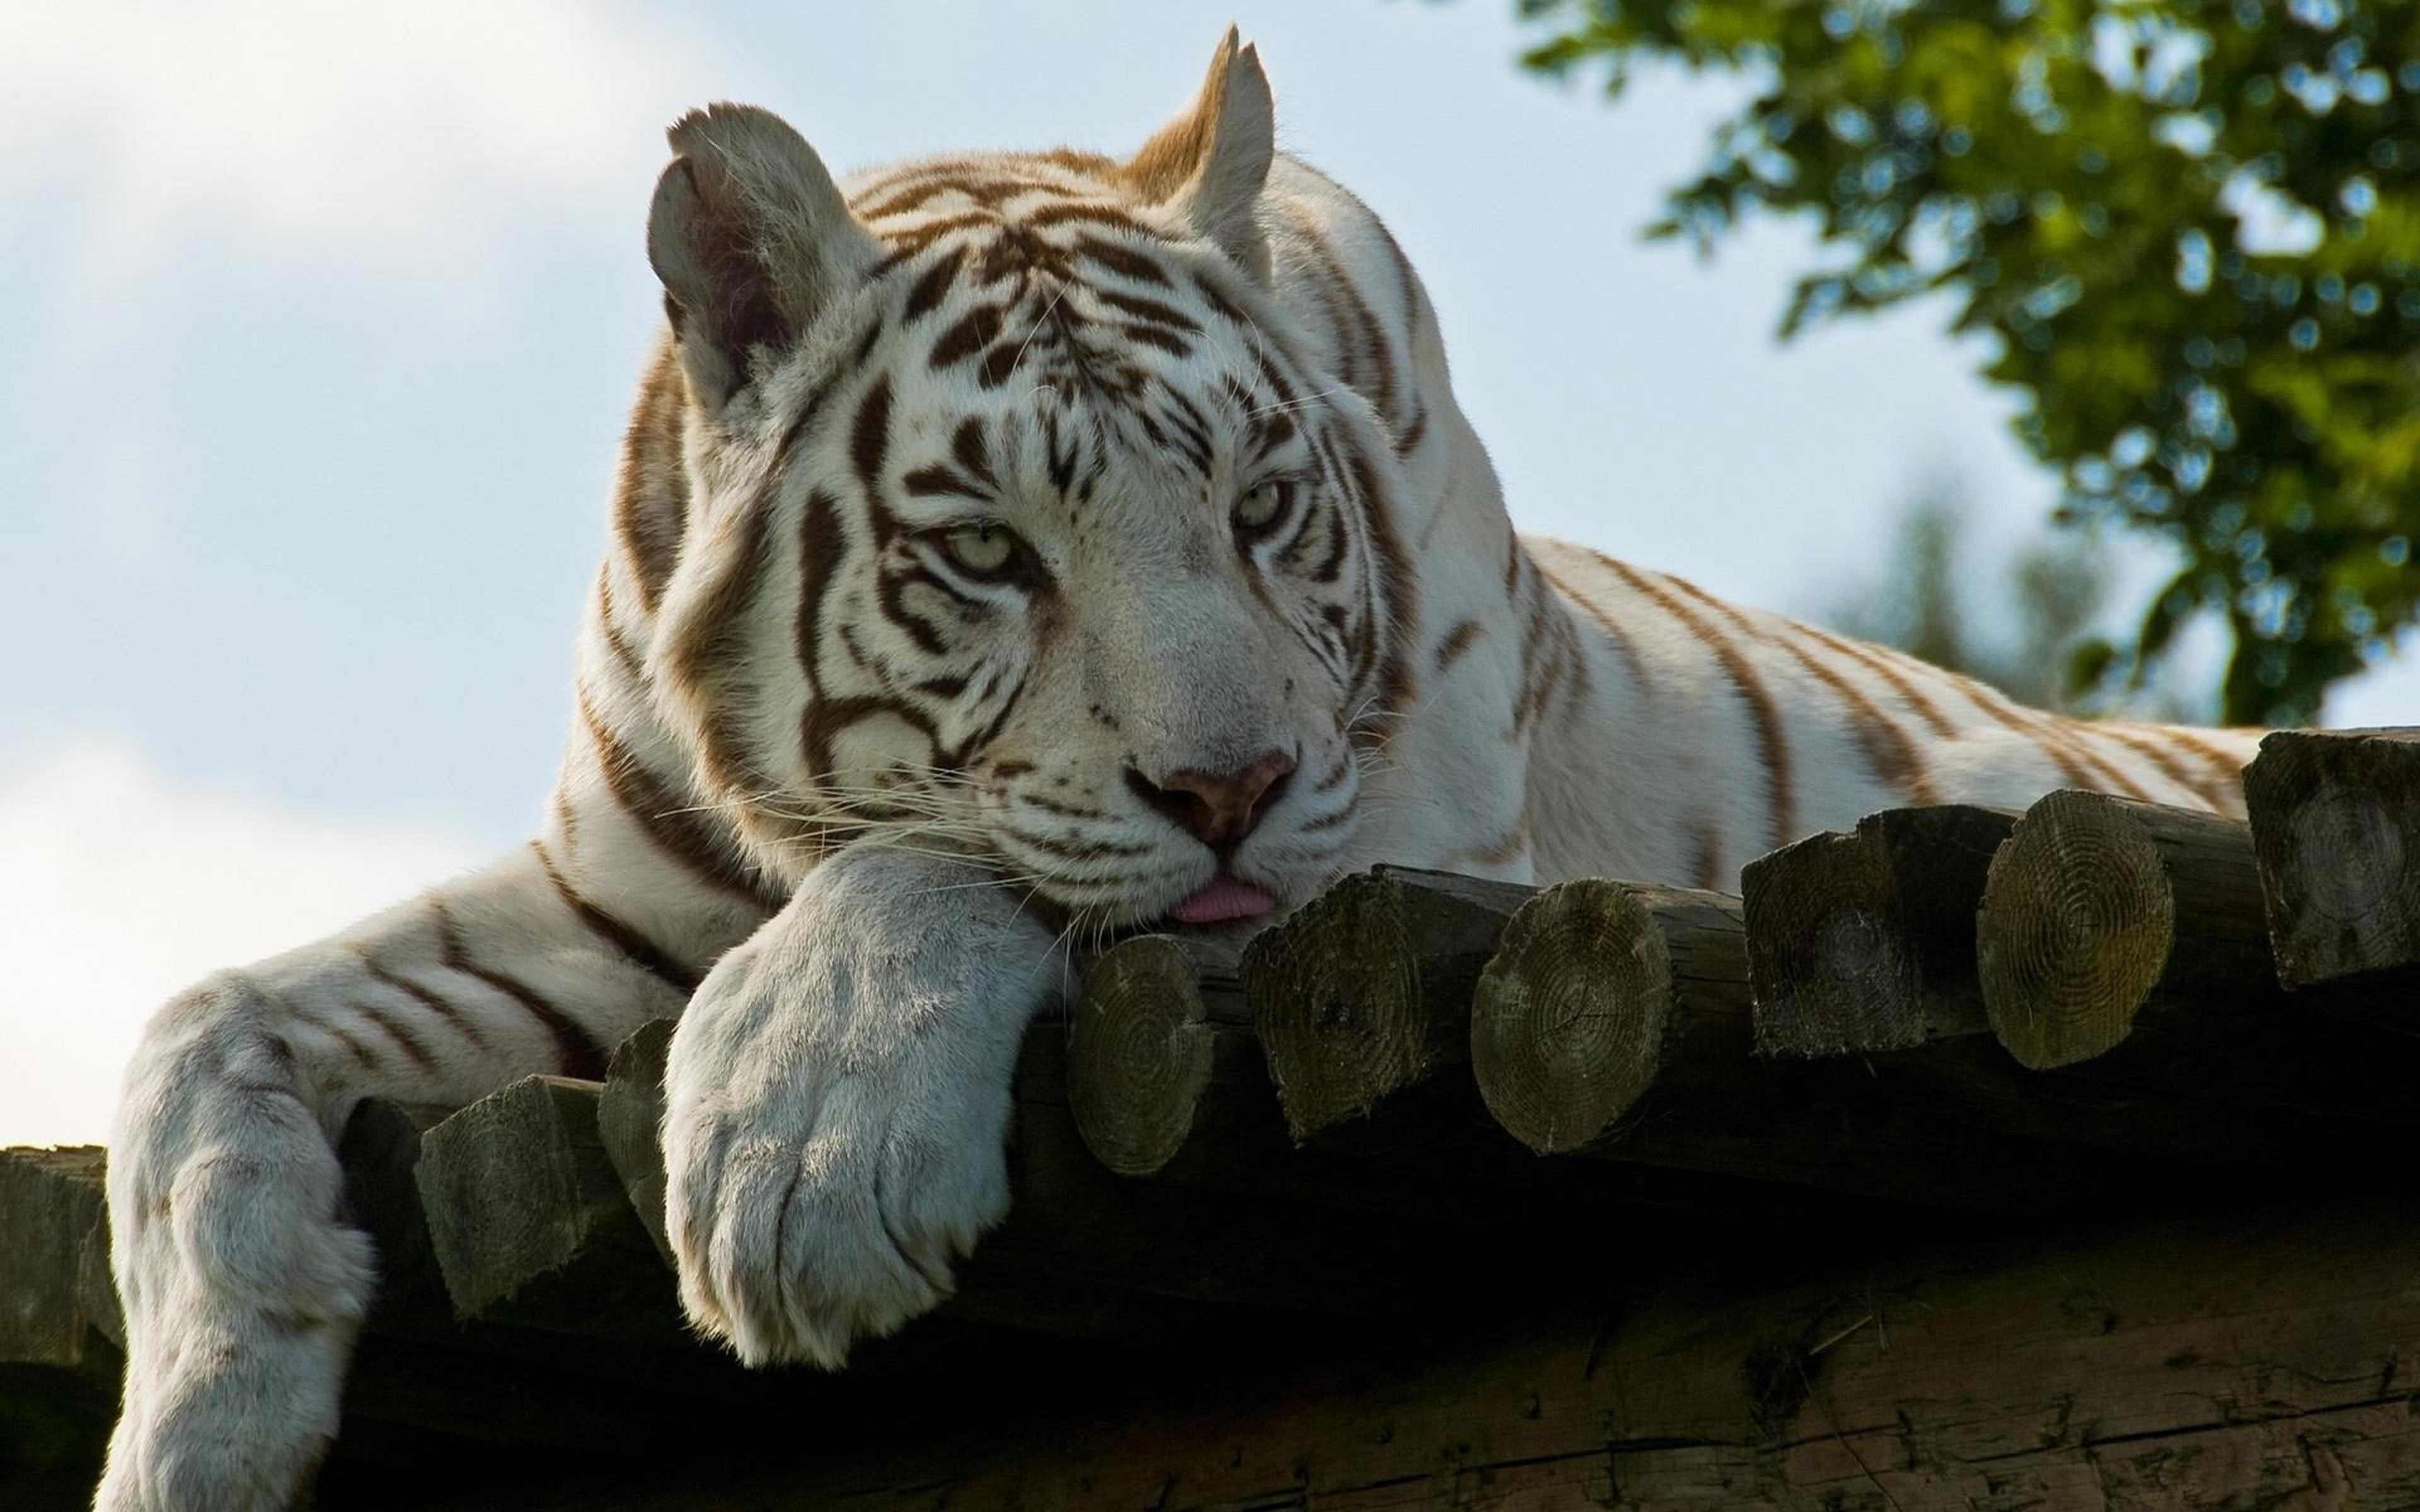 Обои рабочего стола 1366. Уссурийский тигр белый. Уссурийский тигр альбинос. Бенгальский тигр альбинос. Белый тигр альбинос.